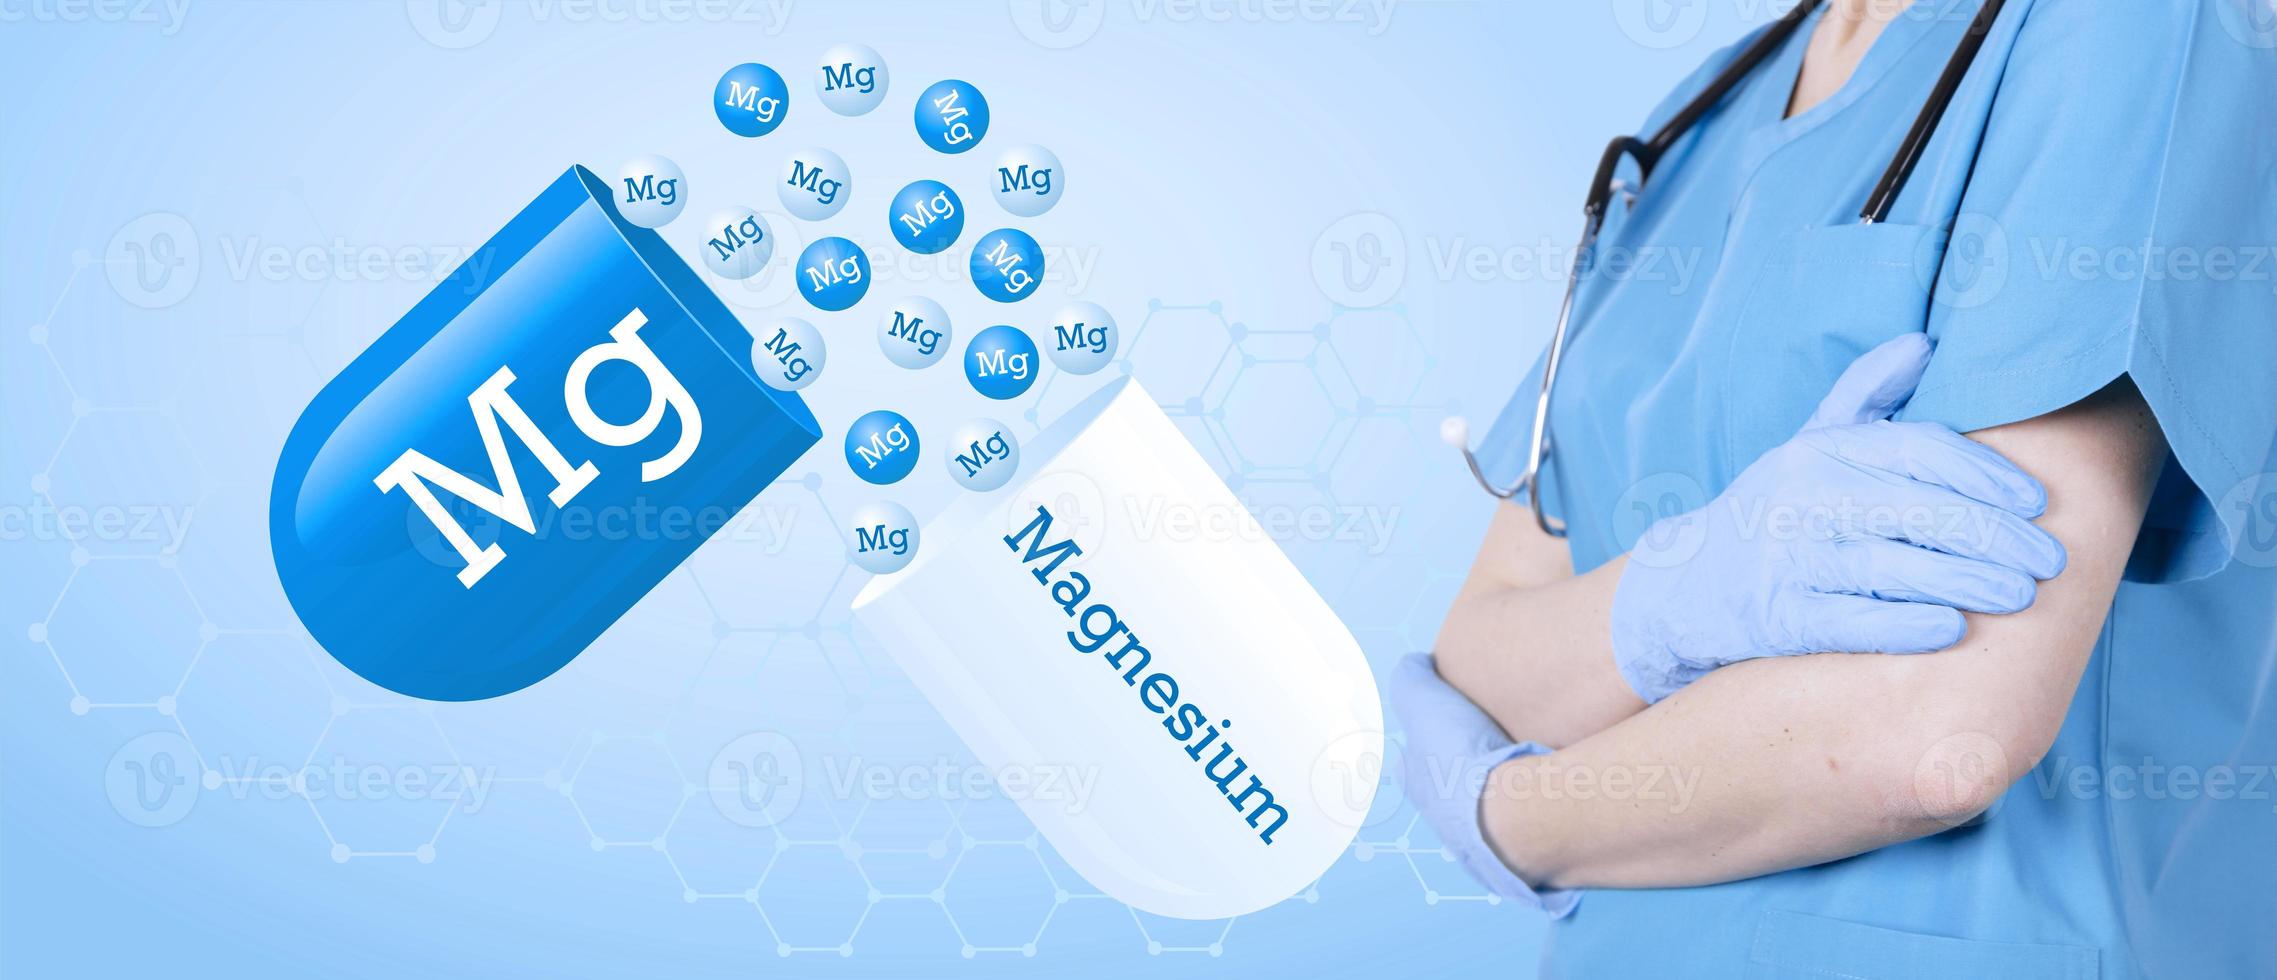 magnésium, mg, capsule médicale sur le fond d'un médecin en uniforme médical. fond bleu médical, affiche d'information. photo